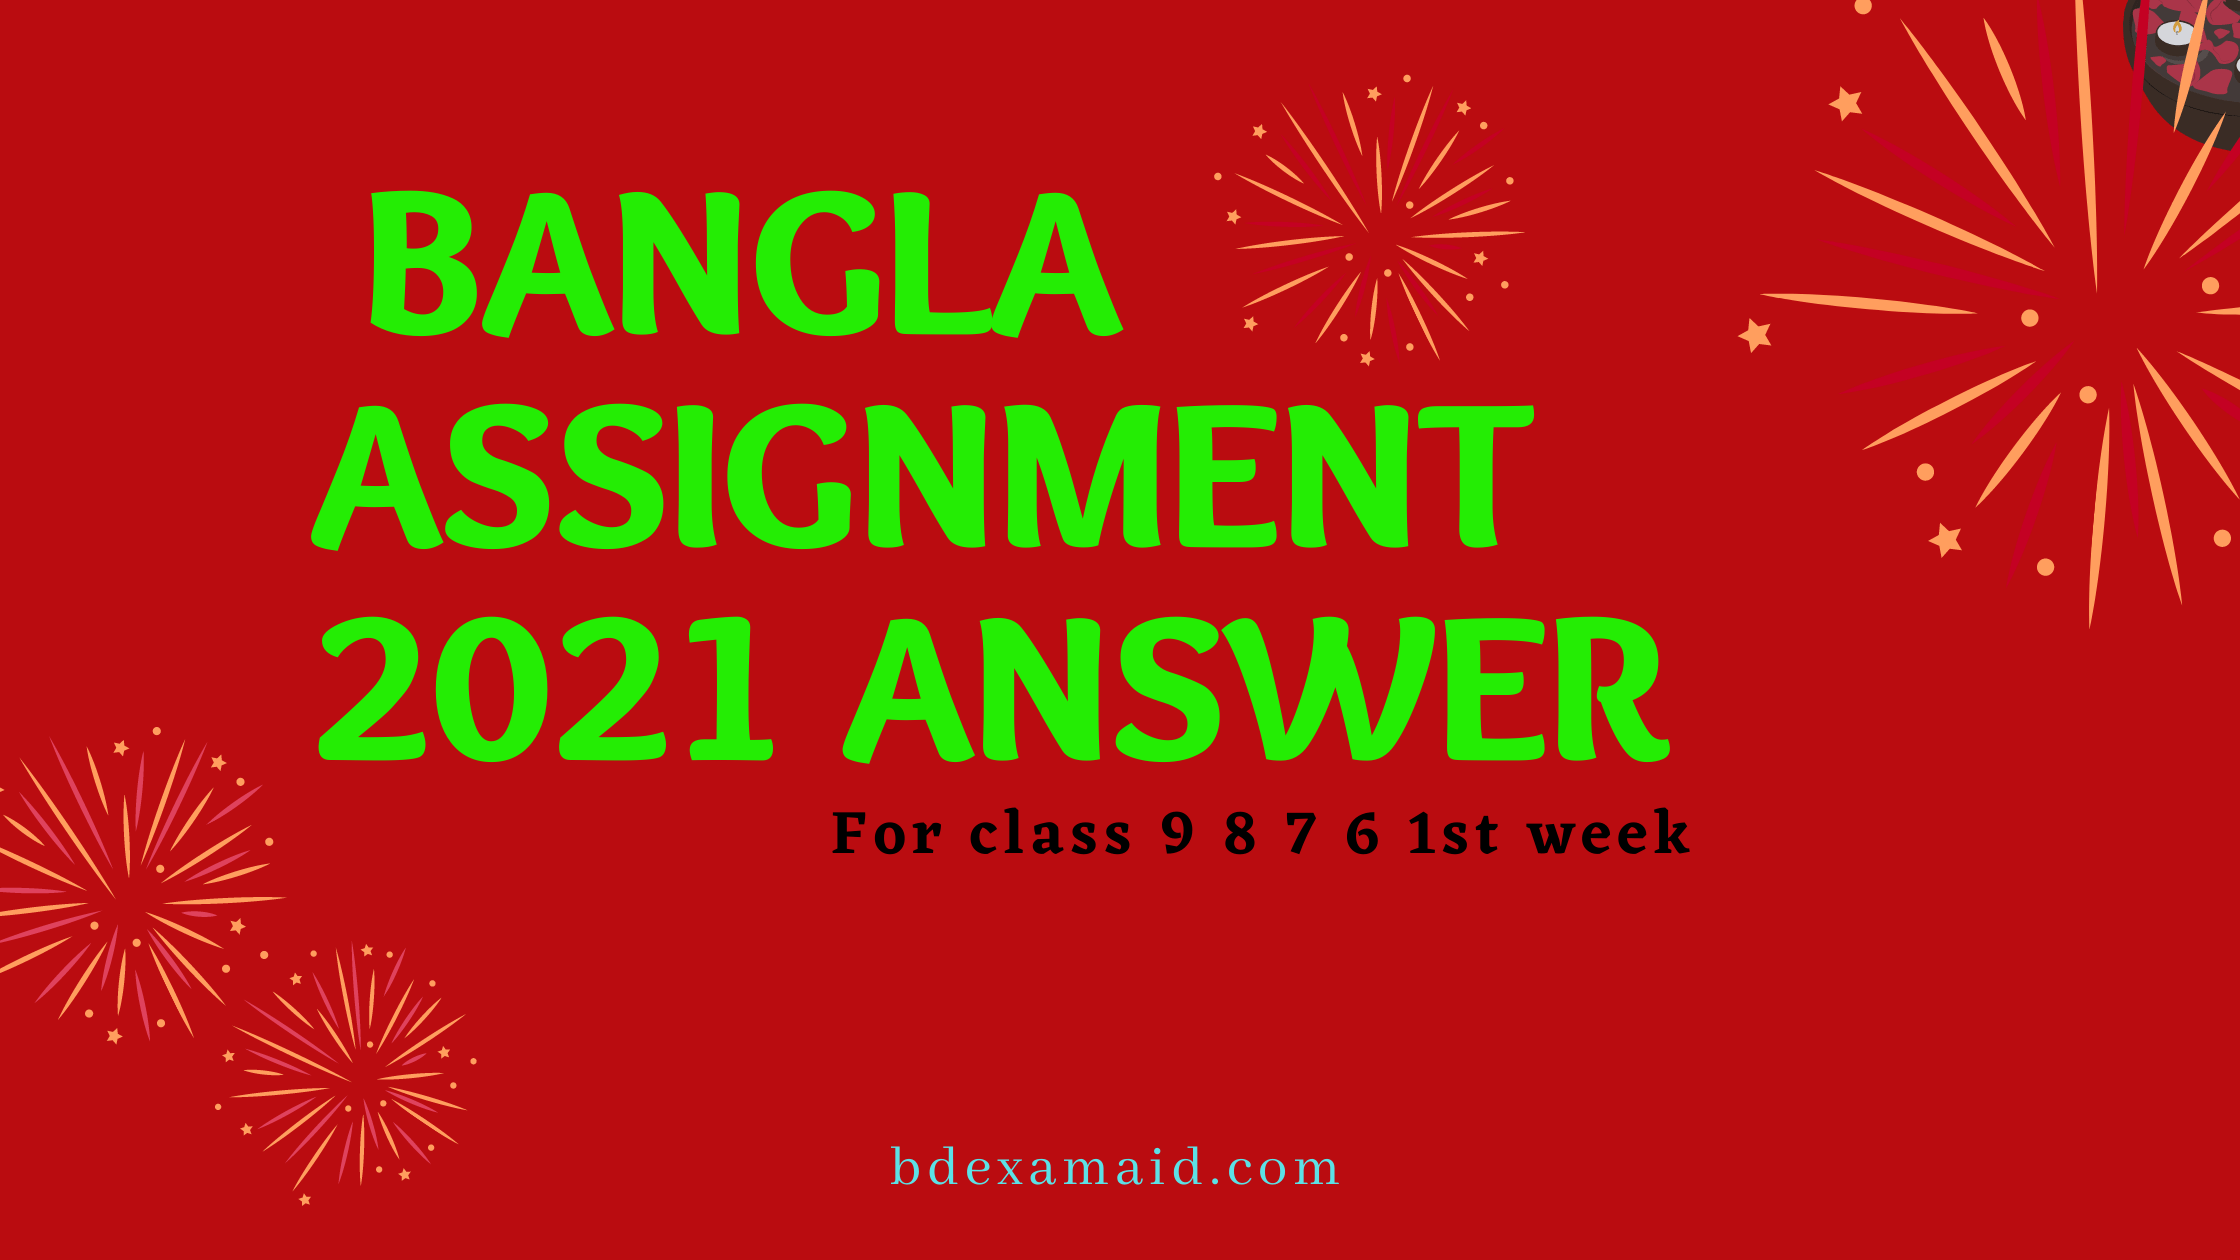 Bangla Assignment 2021 Answer class 9 8 7 6